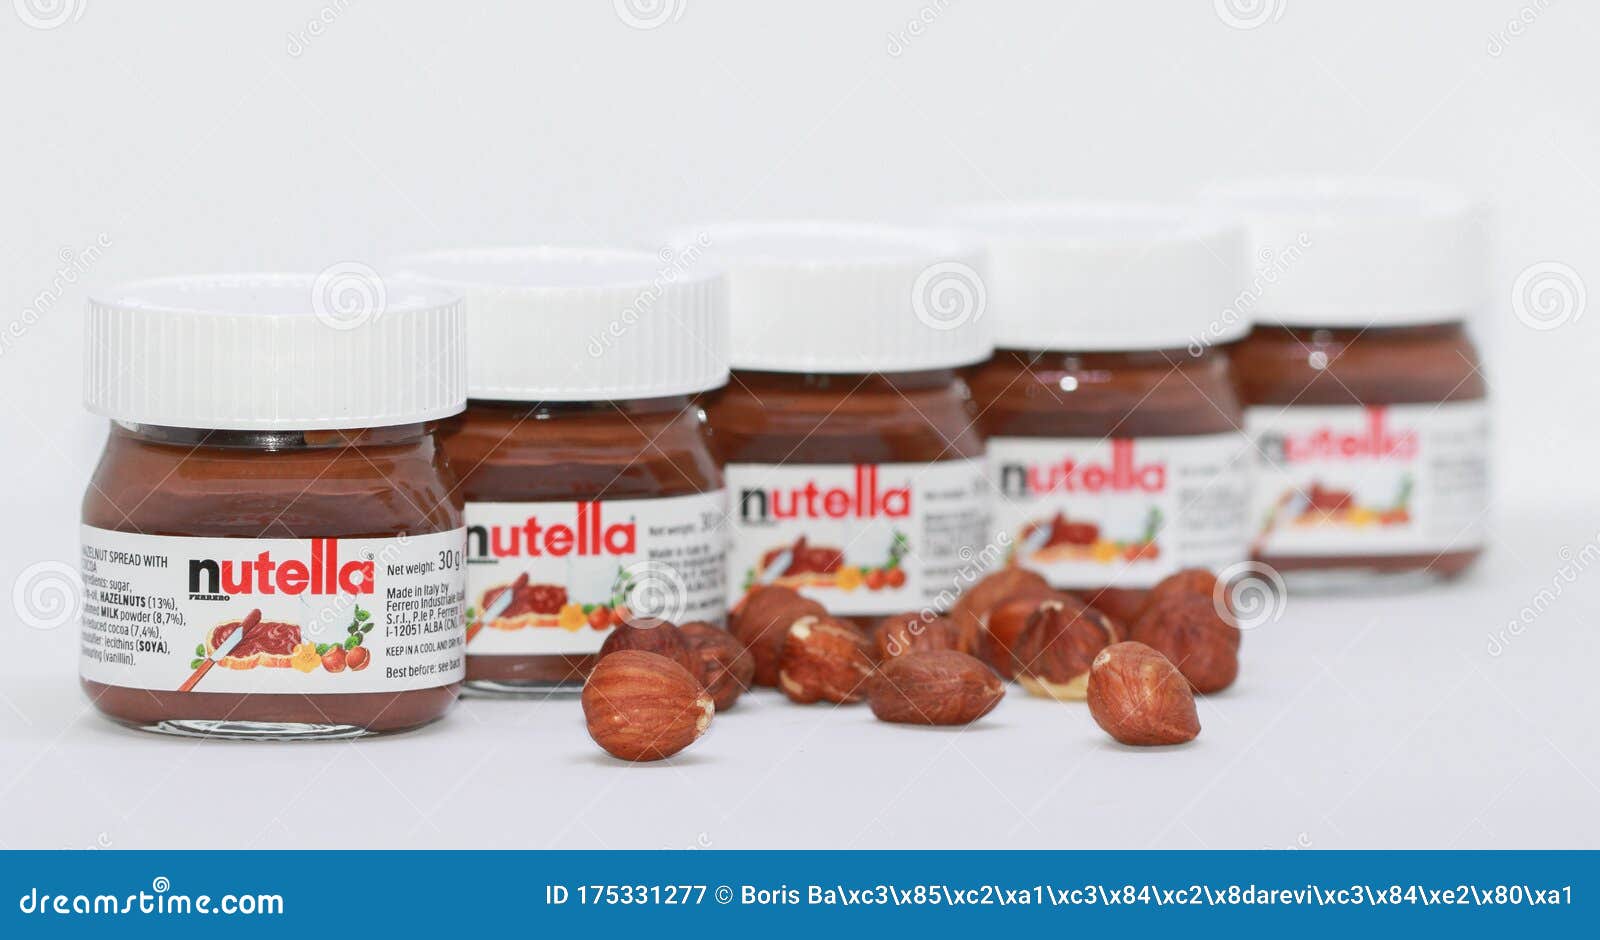 Miniature Nutella Jar  Nutella, Mini nutella, Nutella jar